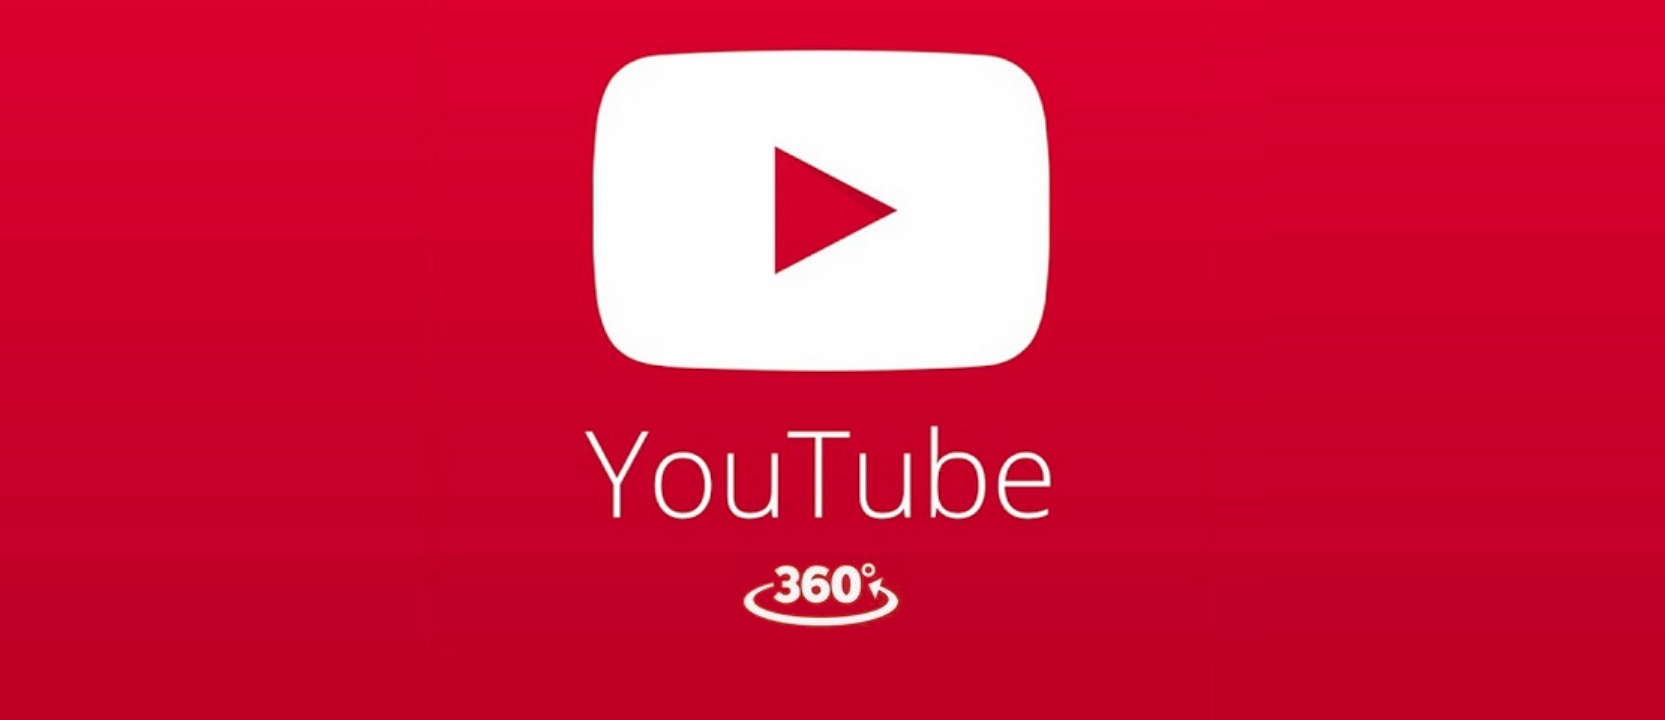 هكذا يمكن البث المباشر للفيديو بتقنية 360 درجة على اليوتوب Youtube